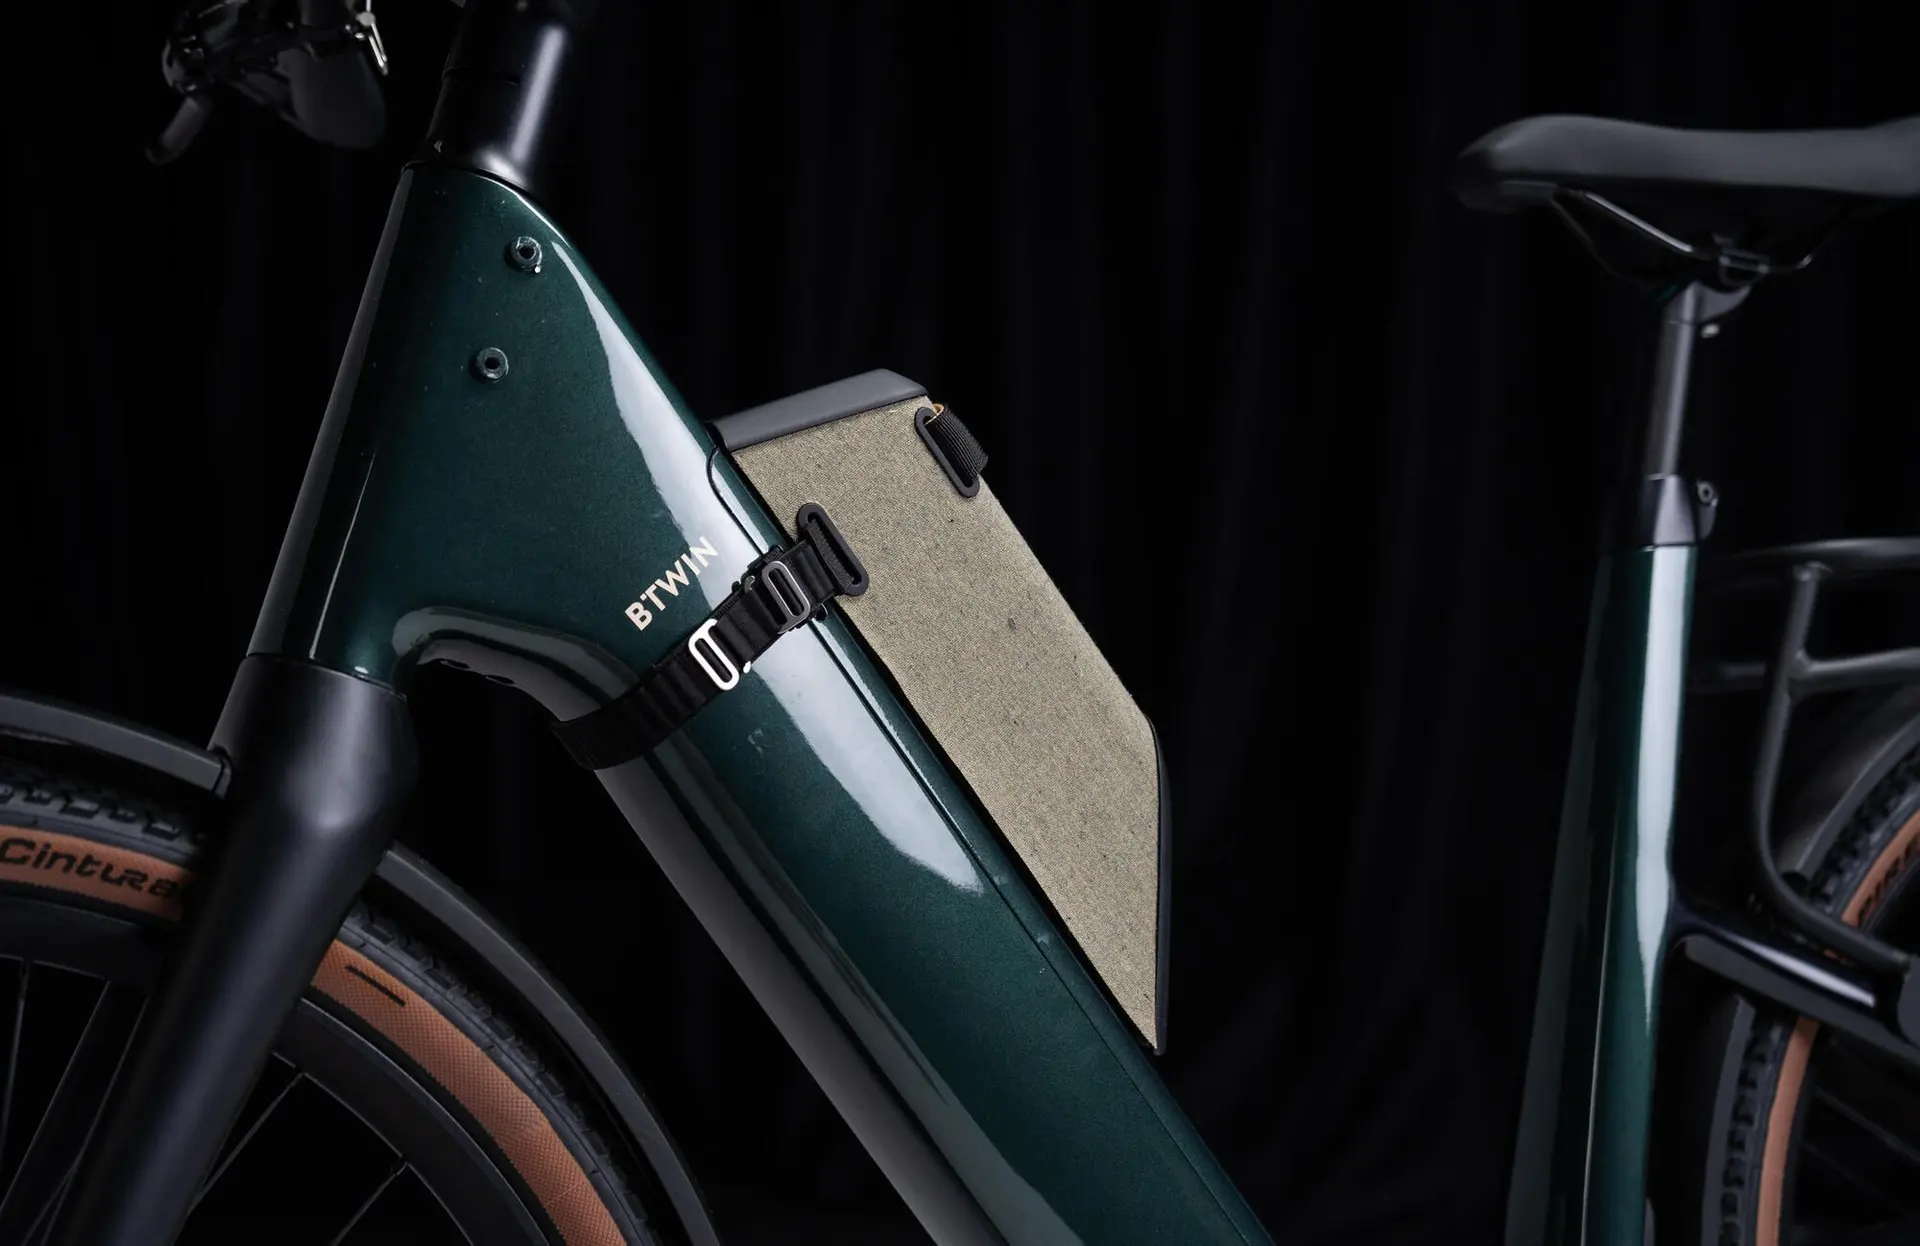 Magic Bike 02可以安裝額外的電池在車架上來提升續航里程